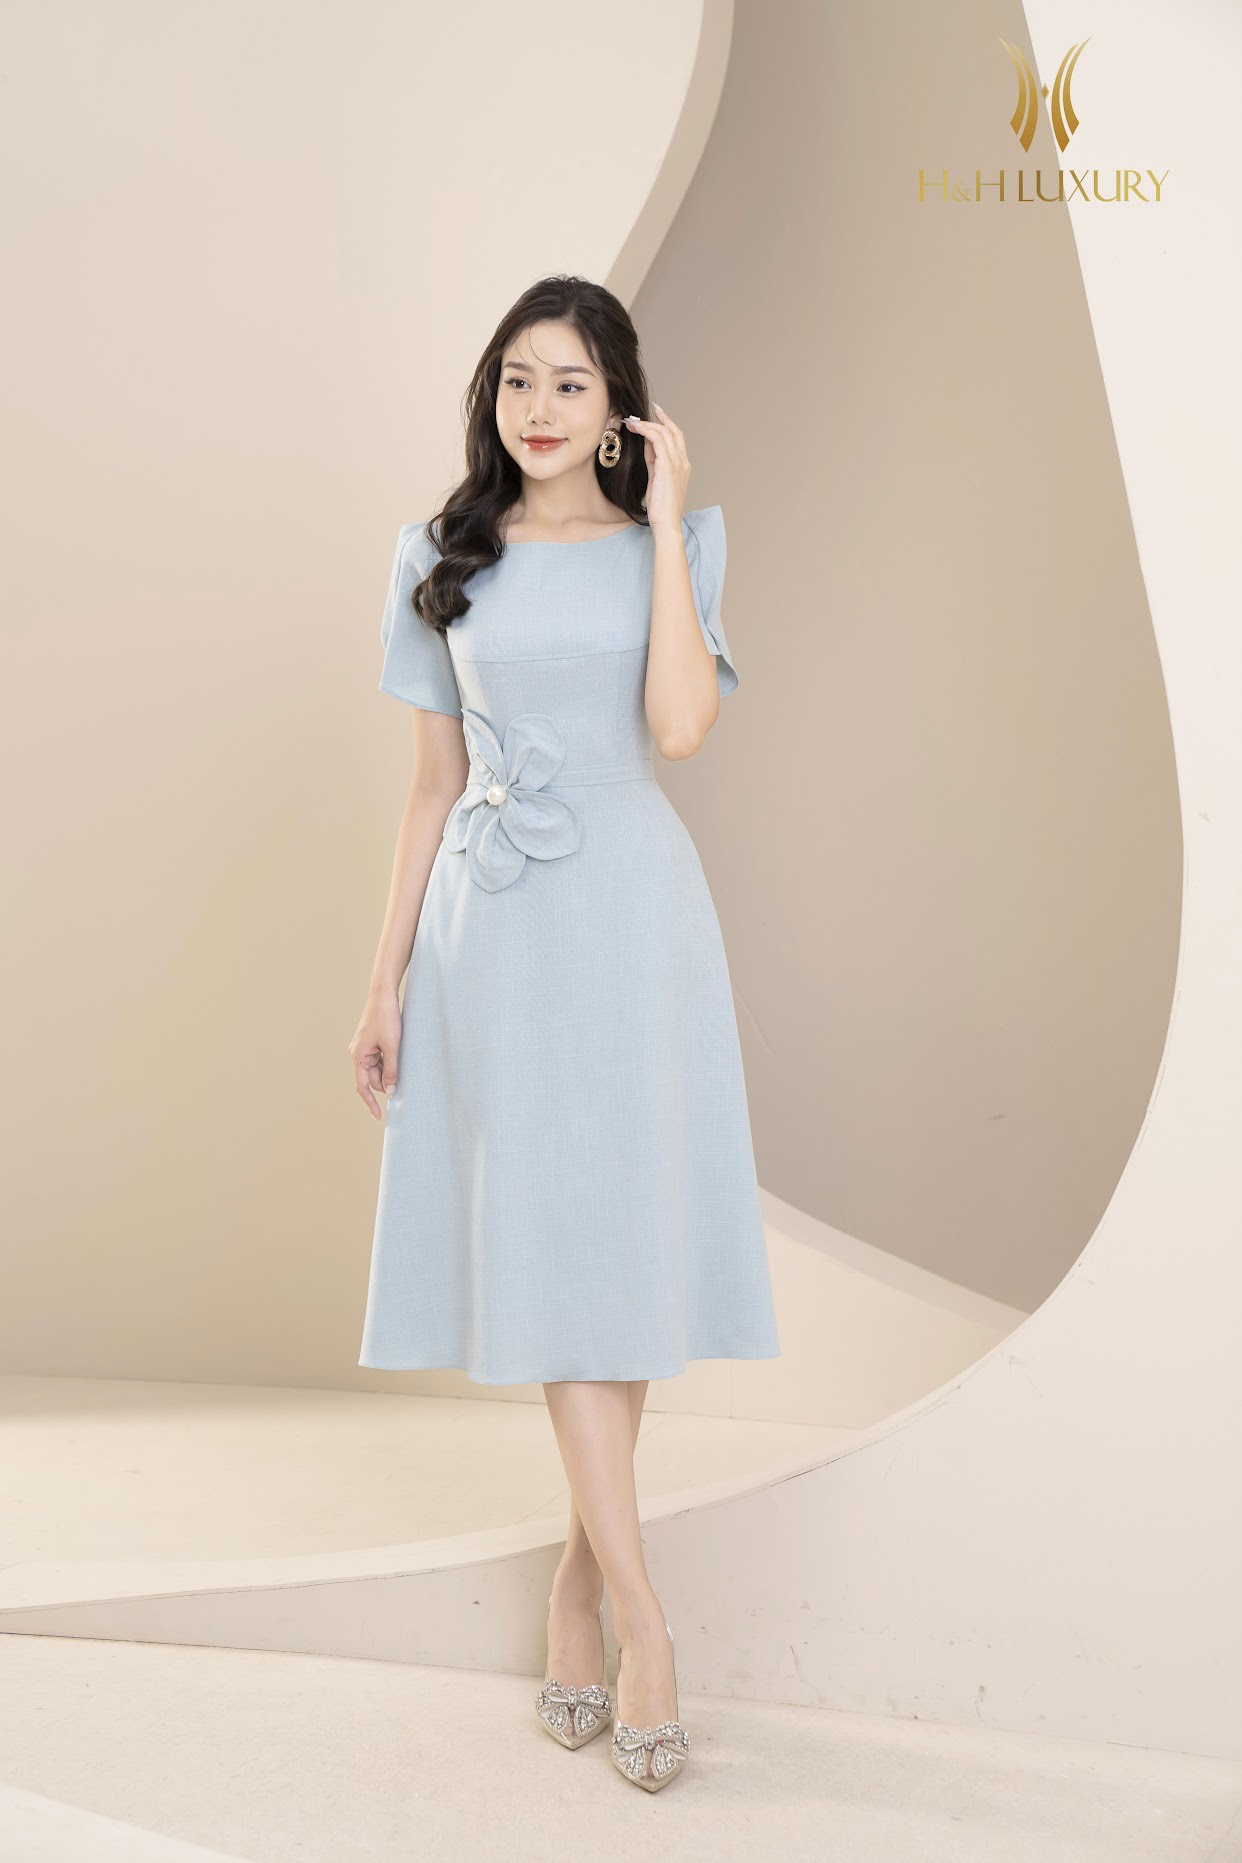 Đầm Và Váy Nữ Thời Trang Hè 2023 Đẹp Xinh Xắn Thiết Kế Mới 2023 - Thương  Hiệu H&H Luxury